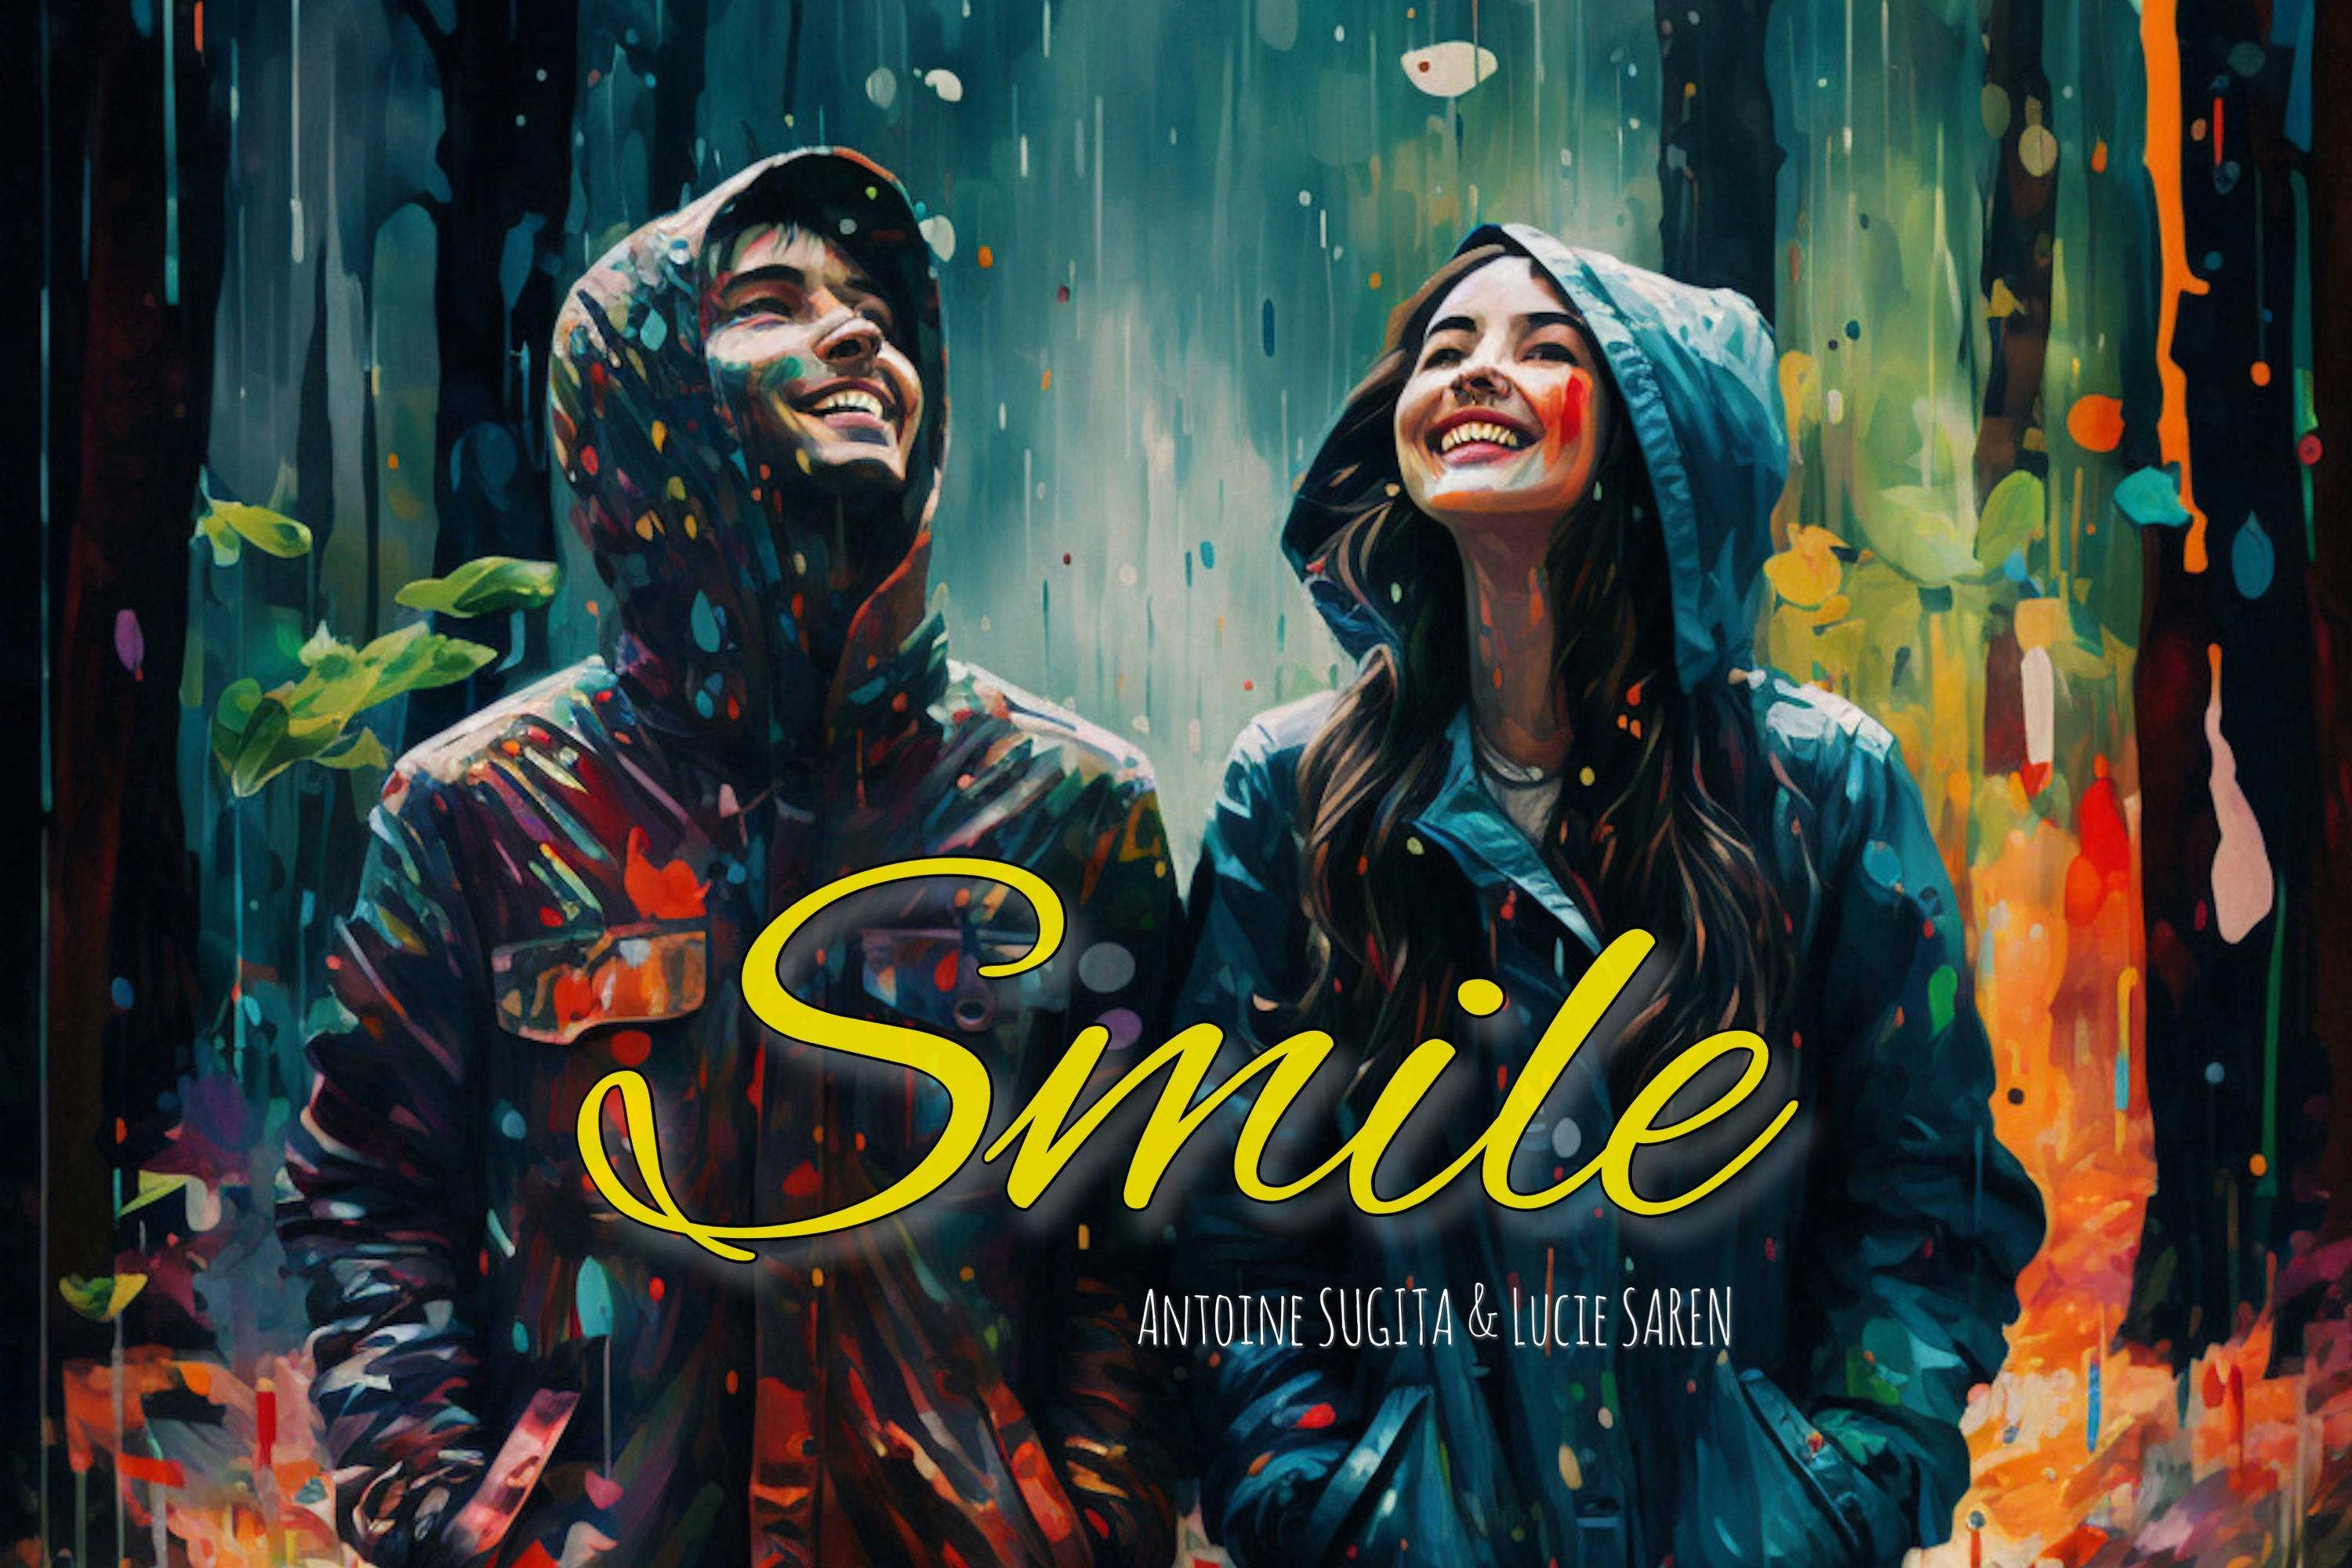 Photo de couverture de la pochette du single, deux personnes sous le pluie dans la forêt avec un sourire